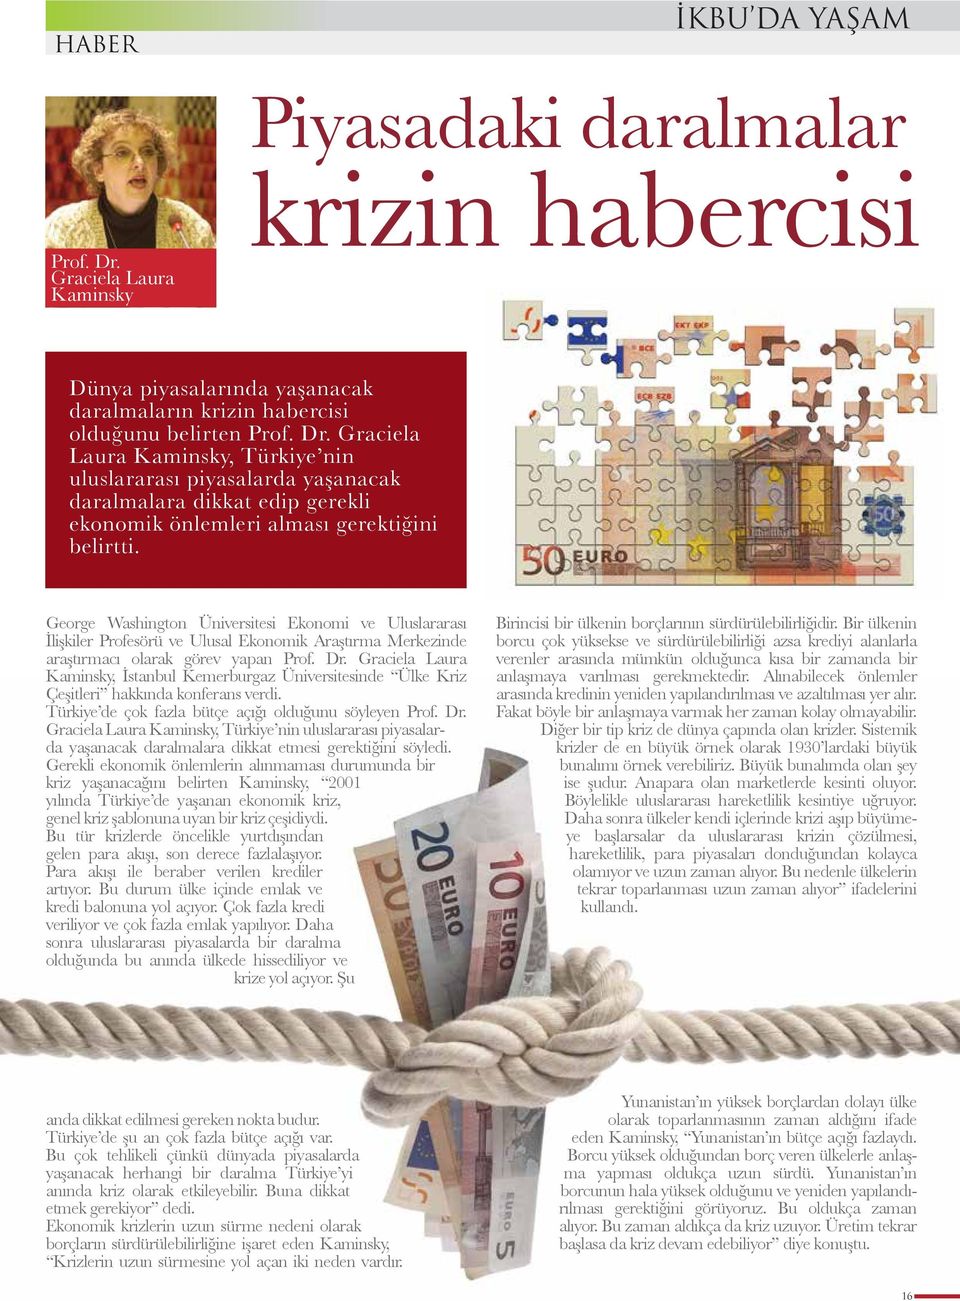 Graciela Laura Kaminsky, Türkiye nin uluslararası piyasalarda yaşanacak daralmalara dikkat edip gerekli ekonomik önlemleri alması gerektiğini belirtti.